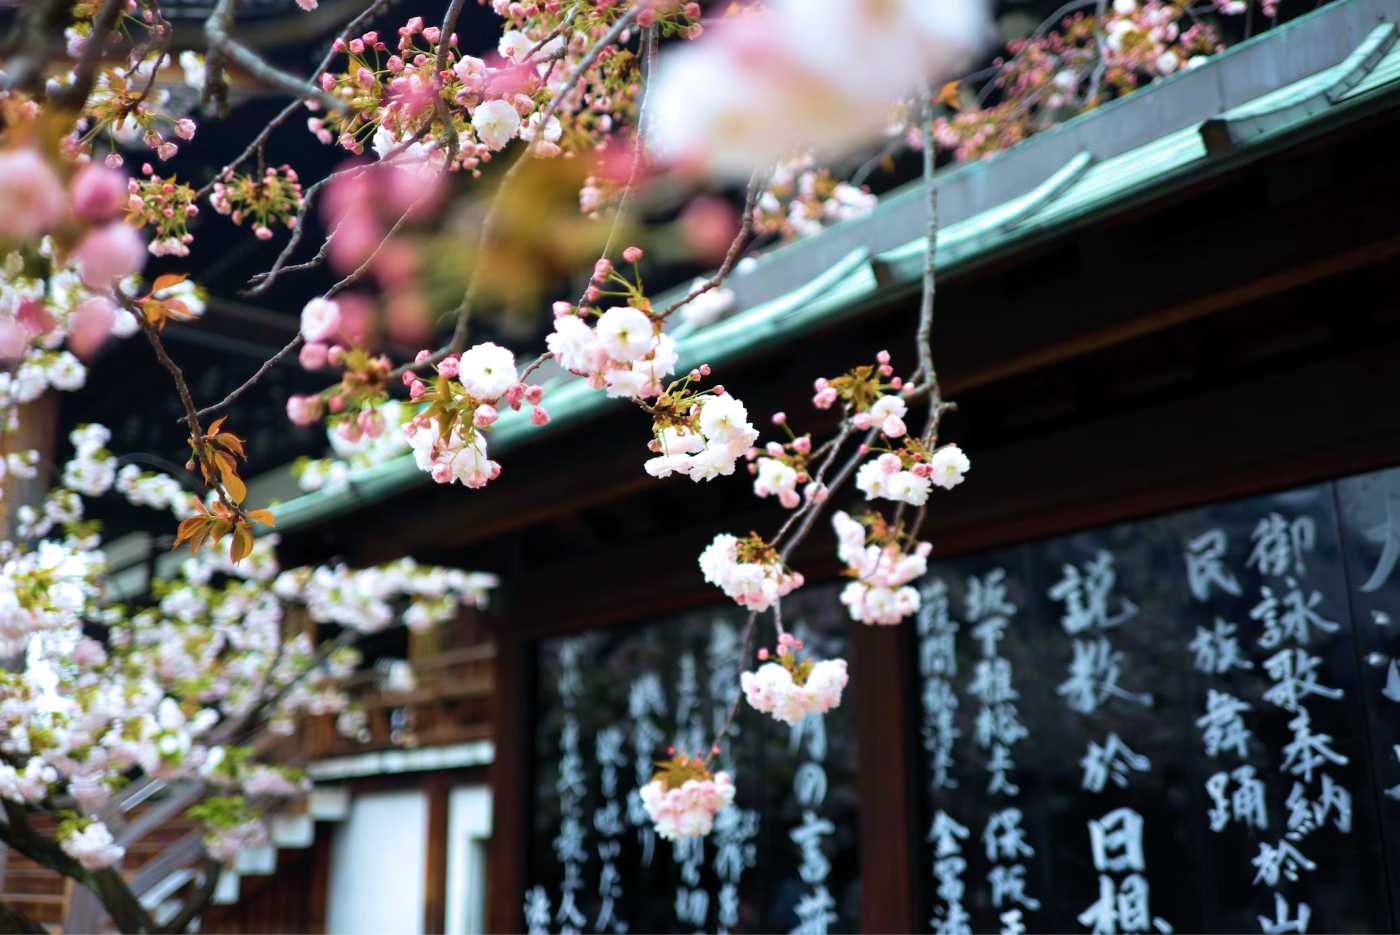 Đến Osaka - ngắm hoa anh đào bừng nở tại thành phố sôi động bậc nhất Nhật Bản - Ảnh 9.